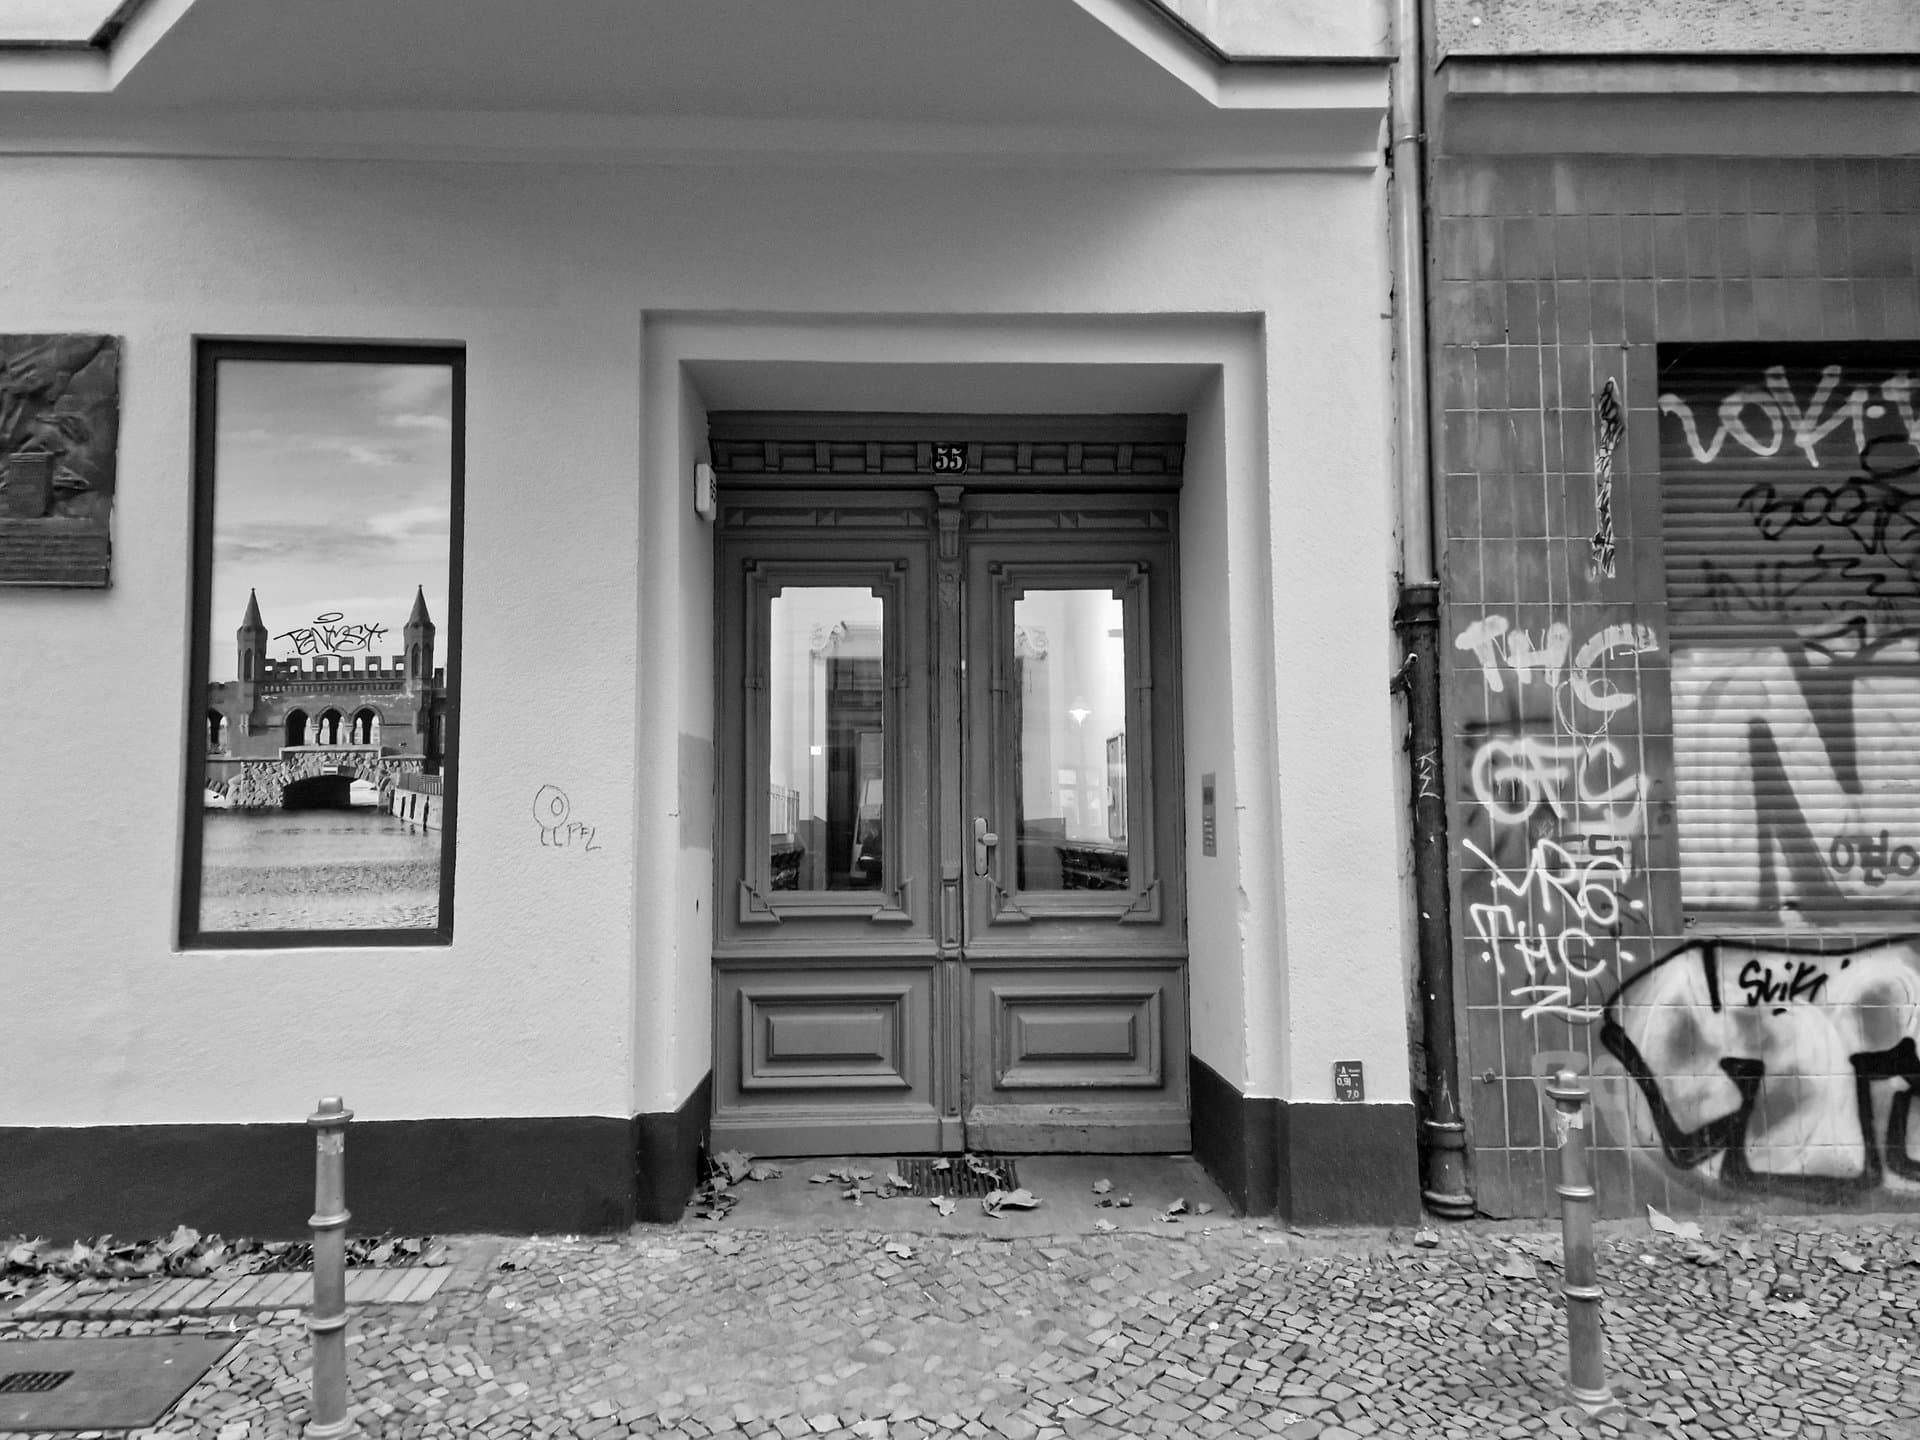 Porte d'entrée de Dieffenbachstraße 55 : quelques graffitis sur la droite, une fenêtre recouverte d'un faux paysage sur la gauche.